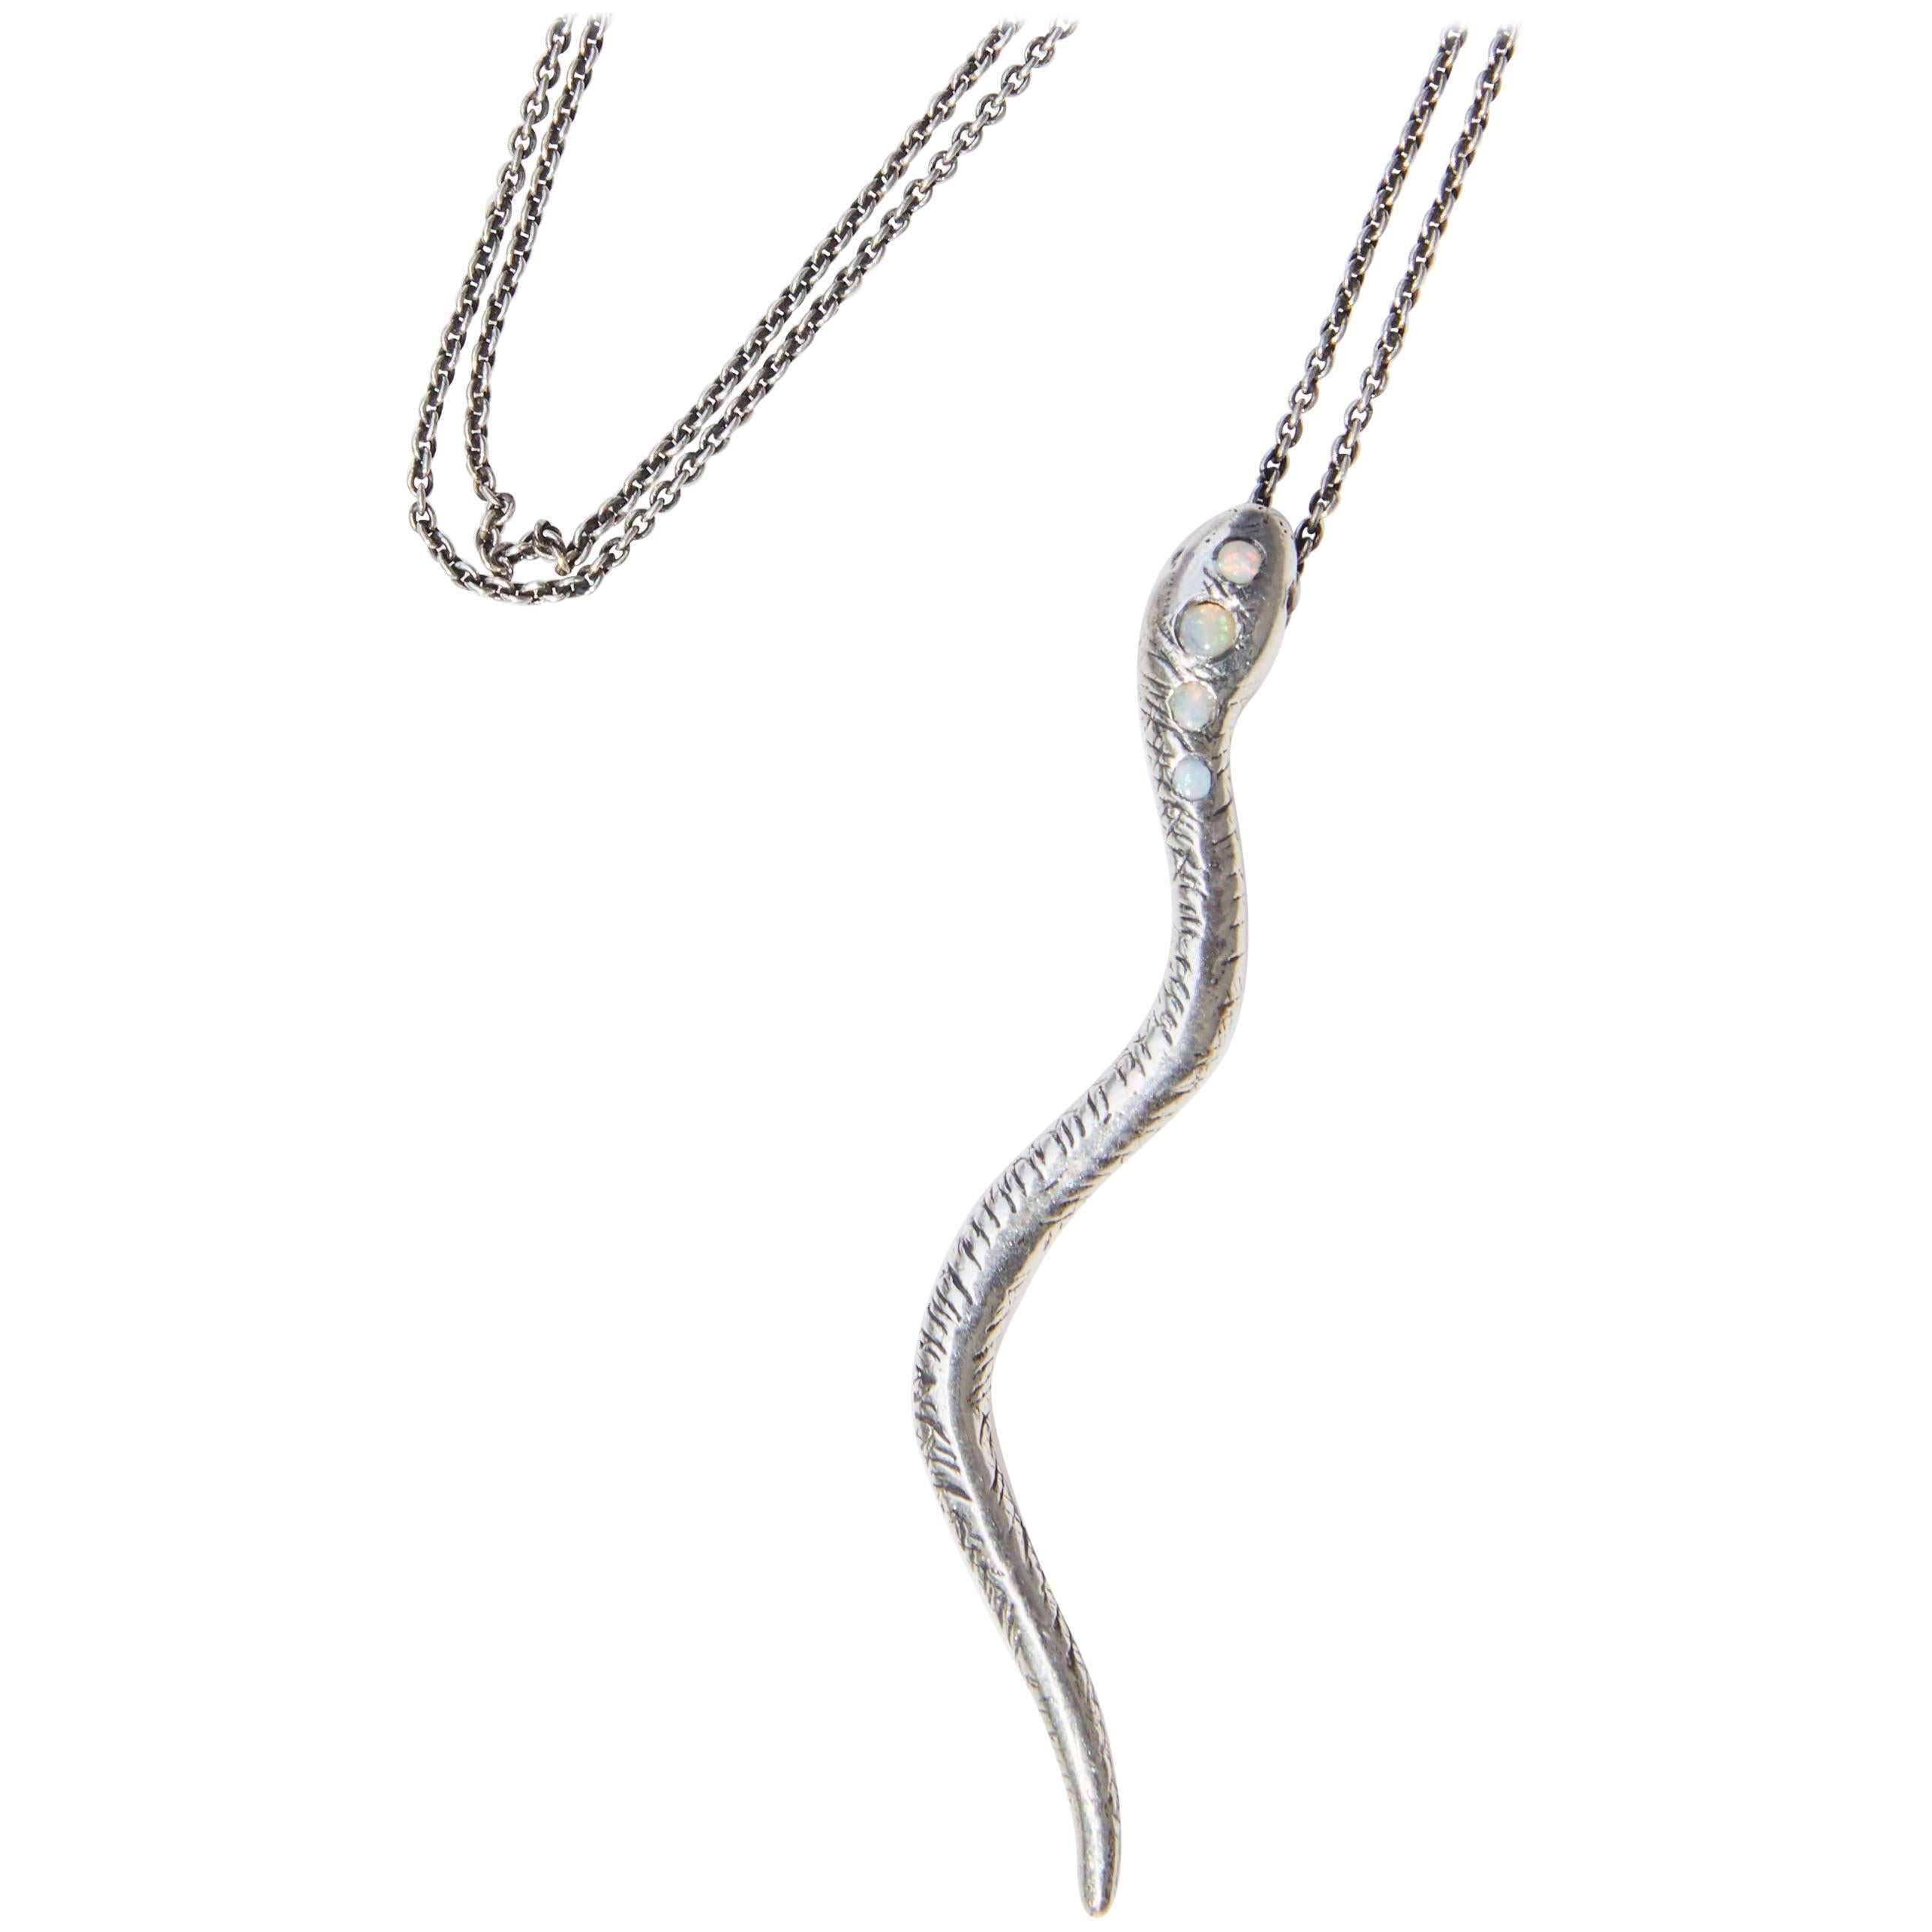 J Dauphin, collier pendentif chaîne serpent en argent, opale, rubis et chaîne